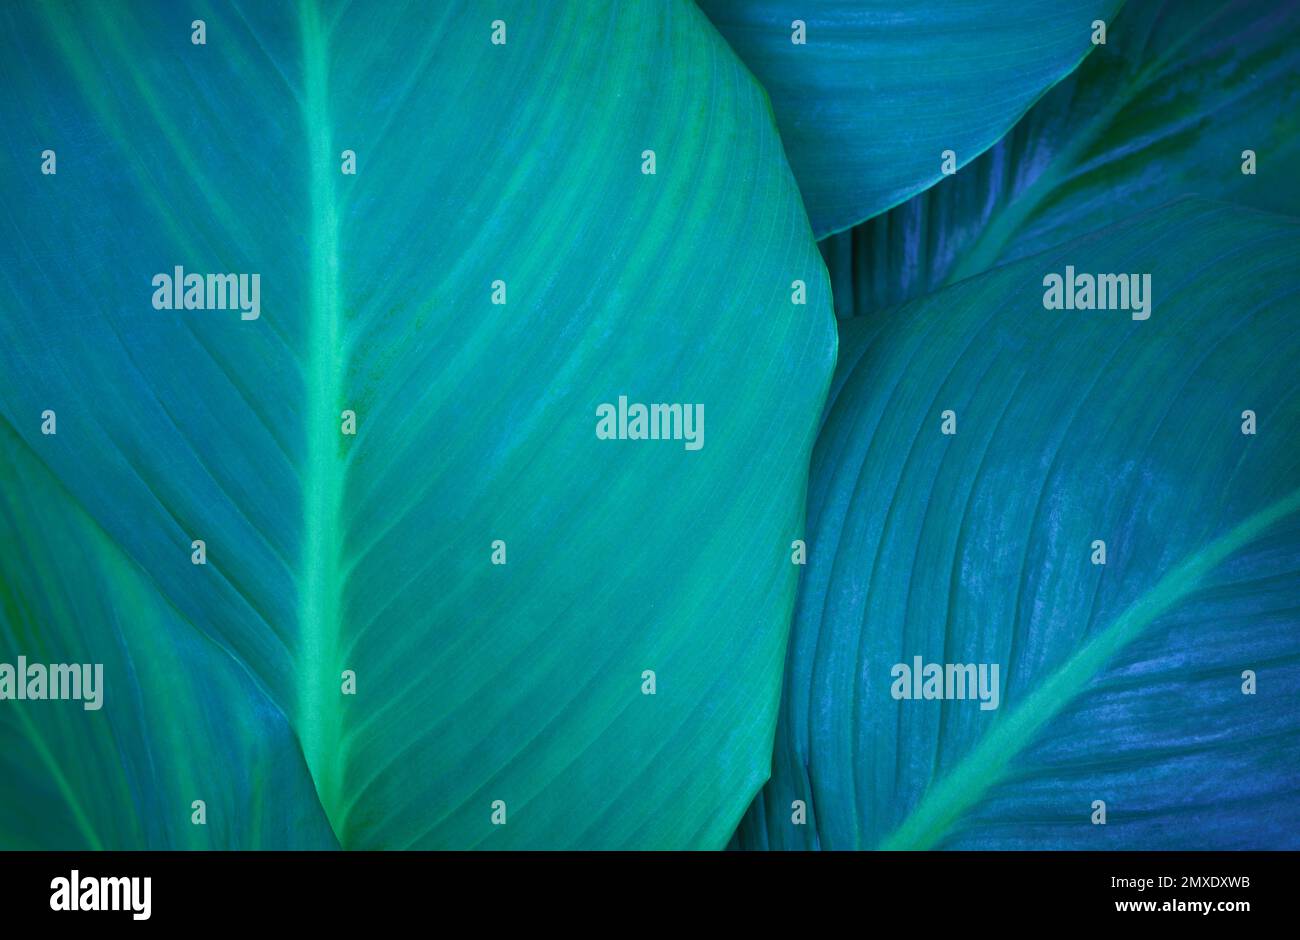 vue de dessus exotique frais vert texture de congé plante tropicale de spathiphyllum cannifolium en bleu clair lueur fond sombre.idée pour la feuille botanique Banque D'Images